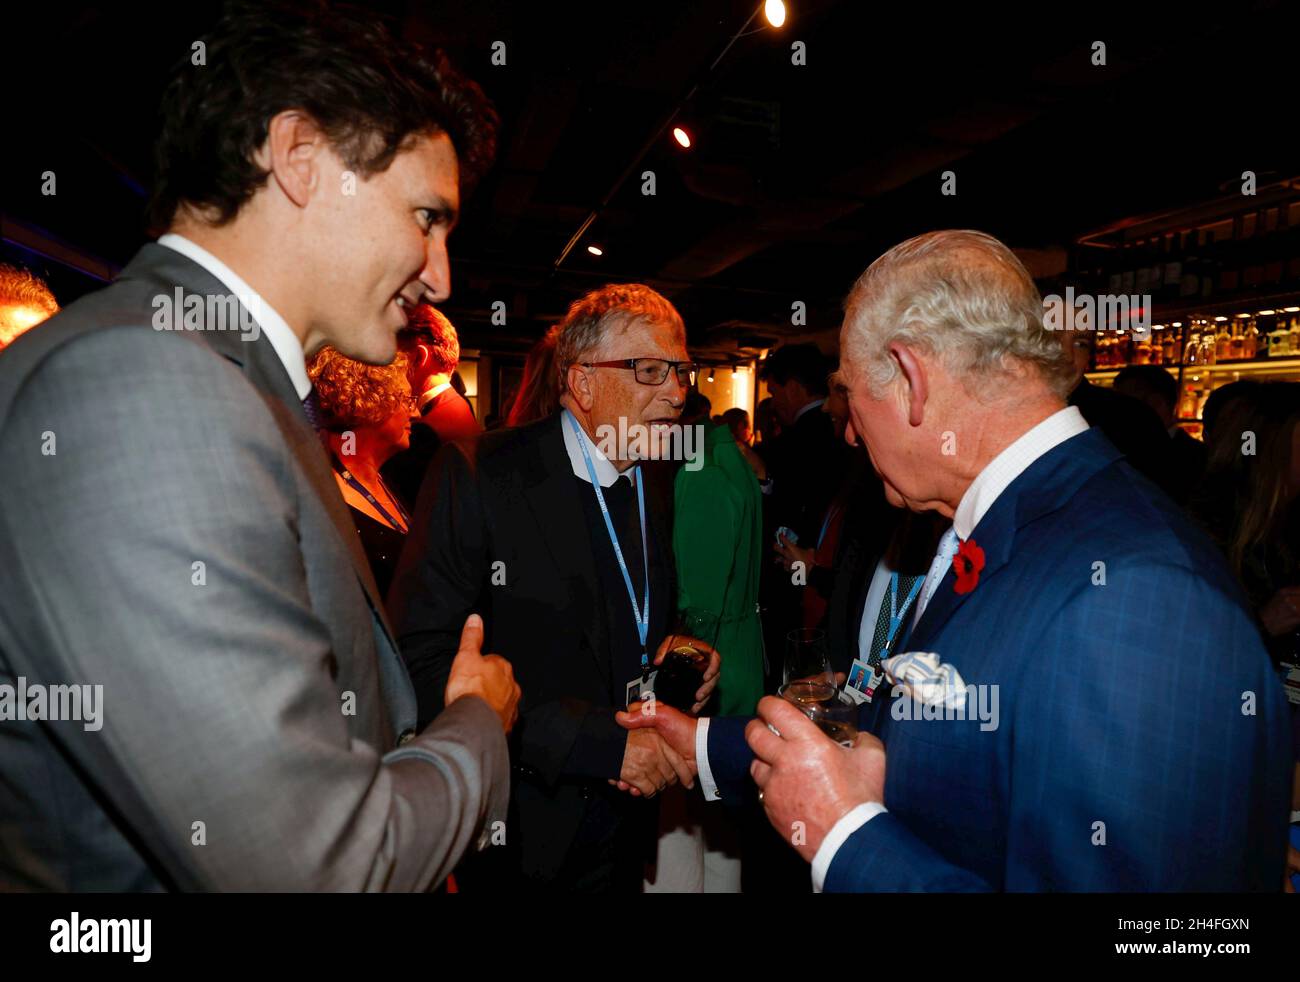 Der Prinz von Wales spricht mit dem amerikanischen Geschäftsmann Bill Gates (Mitte) und dem kanadischen Premierminister Justin Trudeau (links), während er während des Cop26-Gipfels in Glasgow einen Empfang mit führenden Persönlichkeiten der Welt veranstaltet. Bilddatum: Dienstag, 2. November 2021. Stockfoto